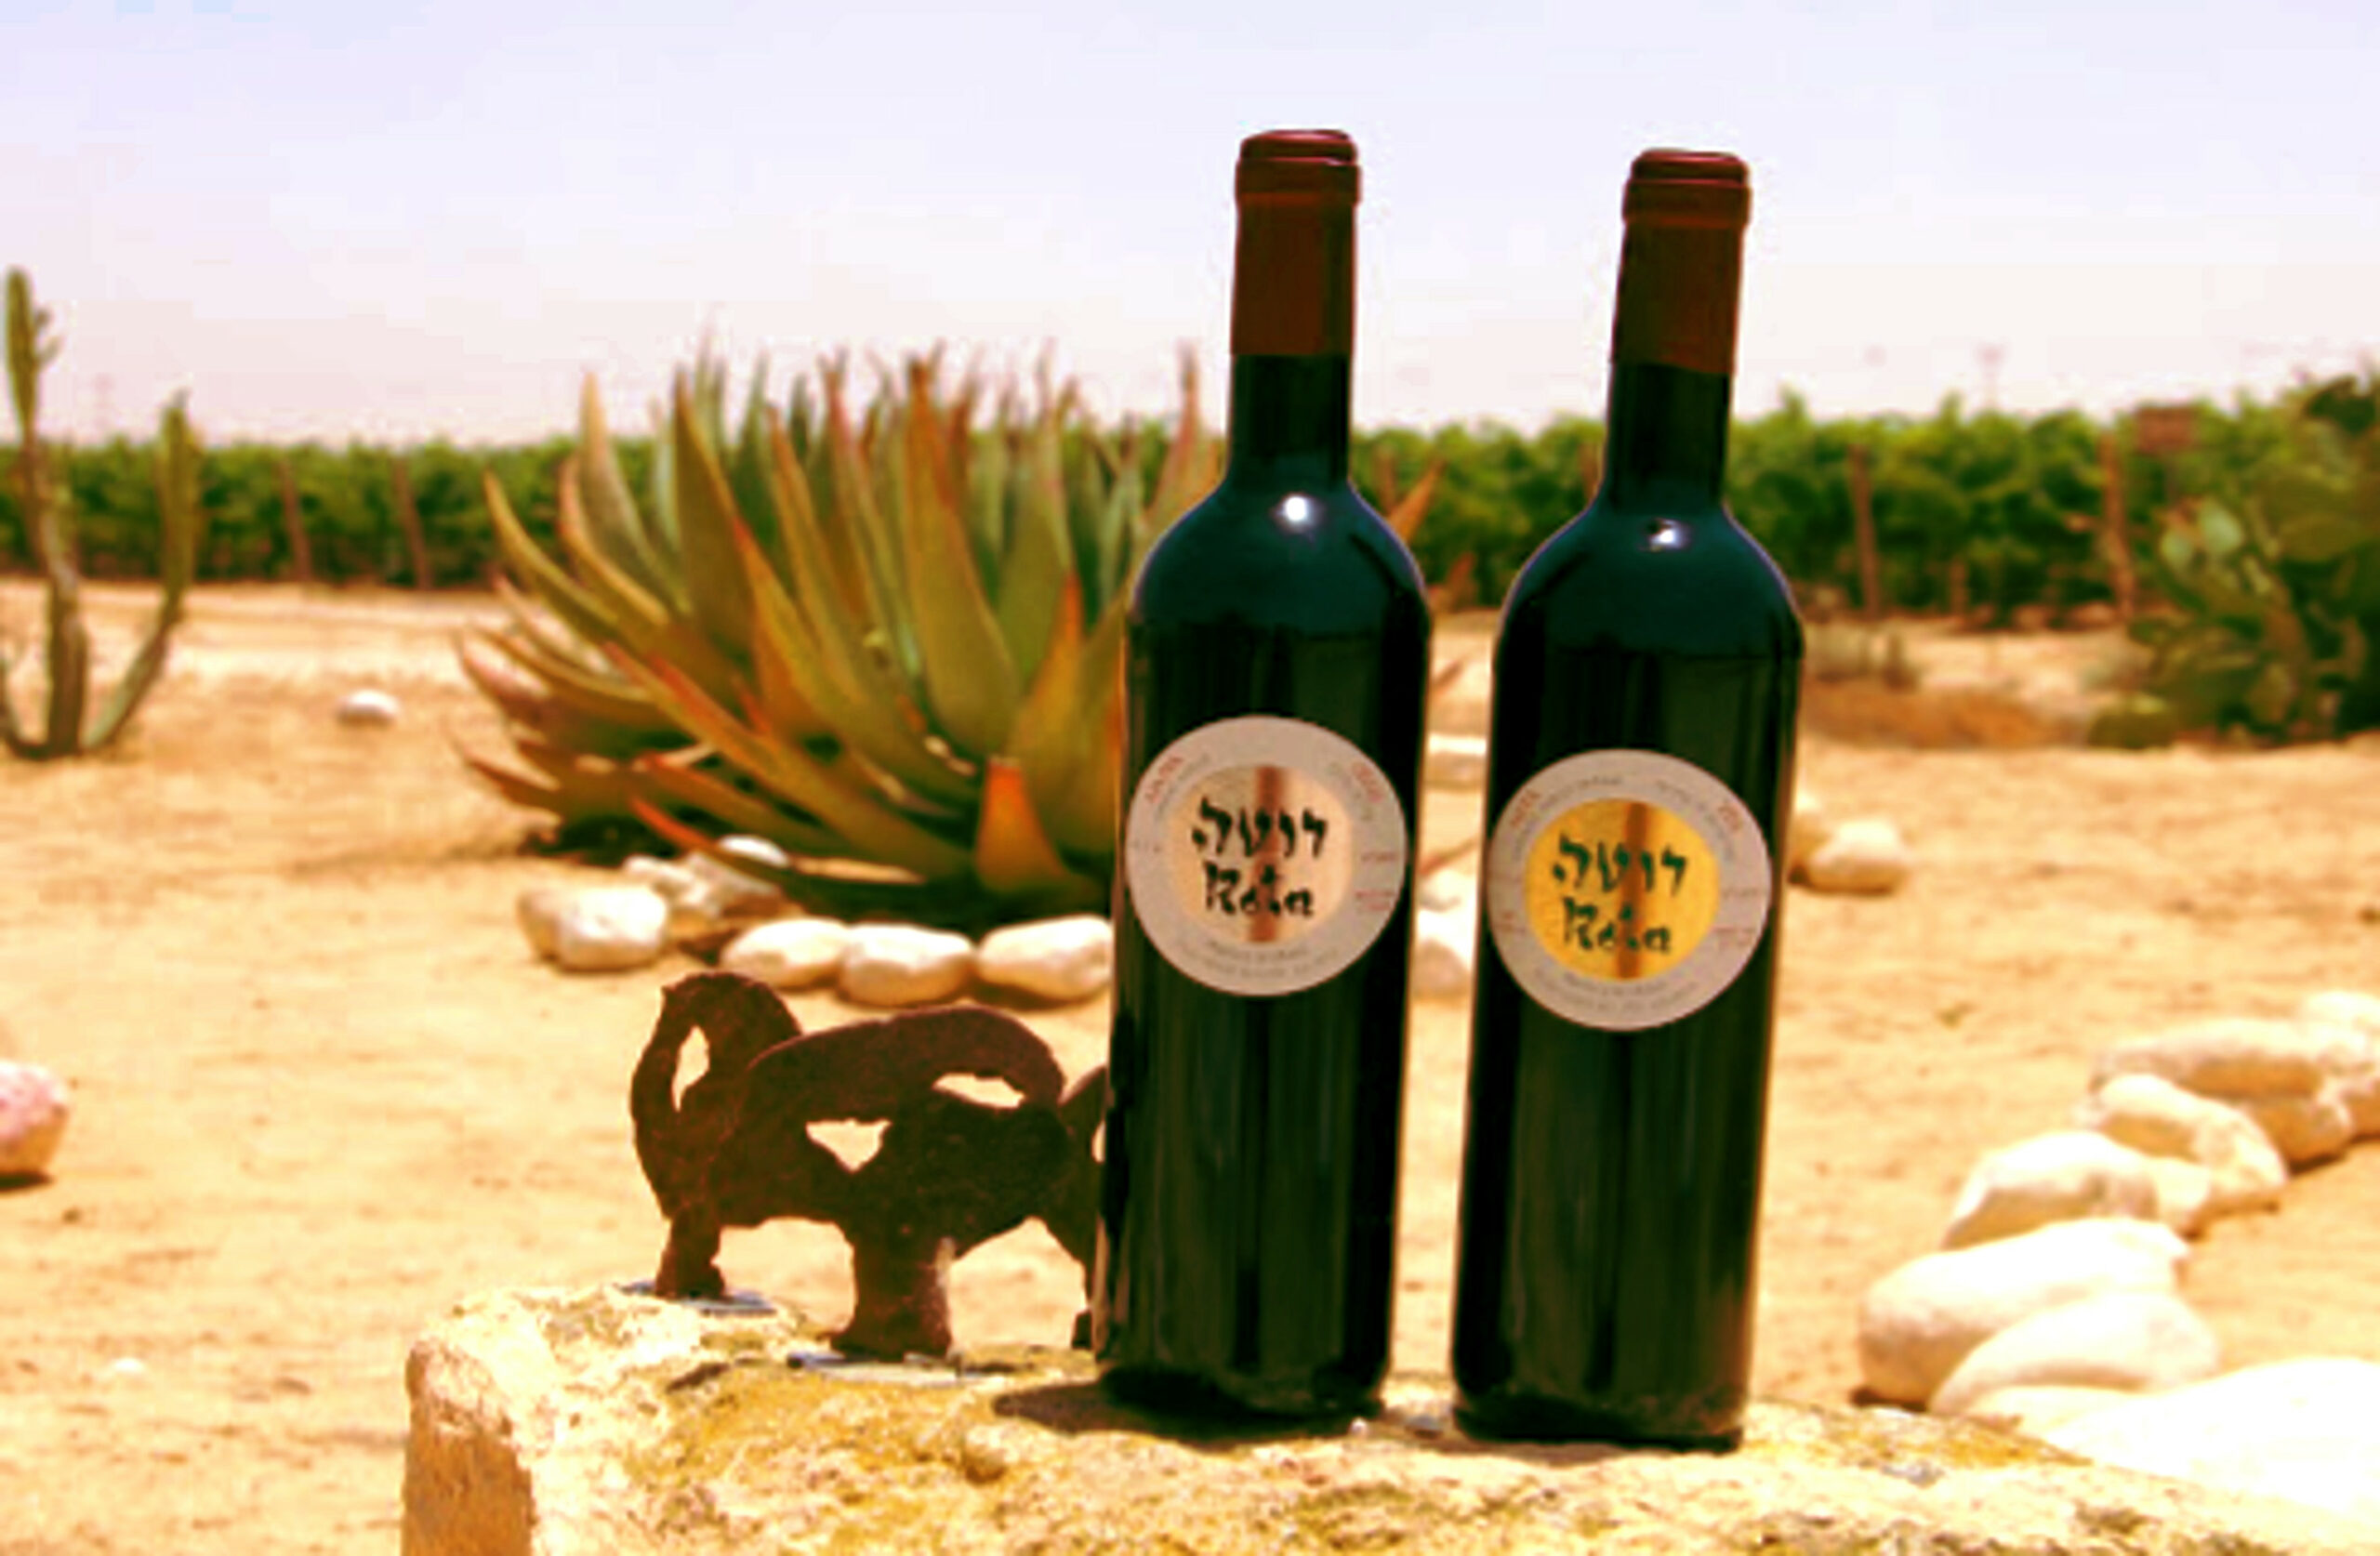 Dwie butelki wina uprawianego lokalnie na pustyni Izraela